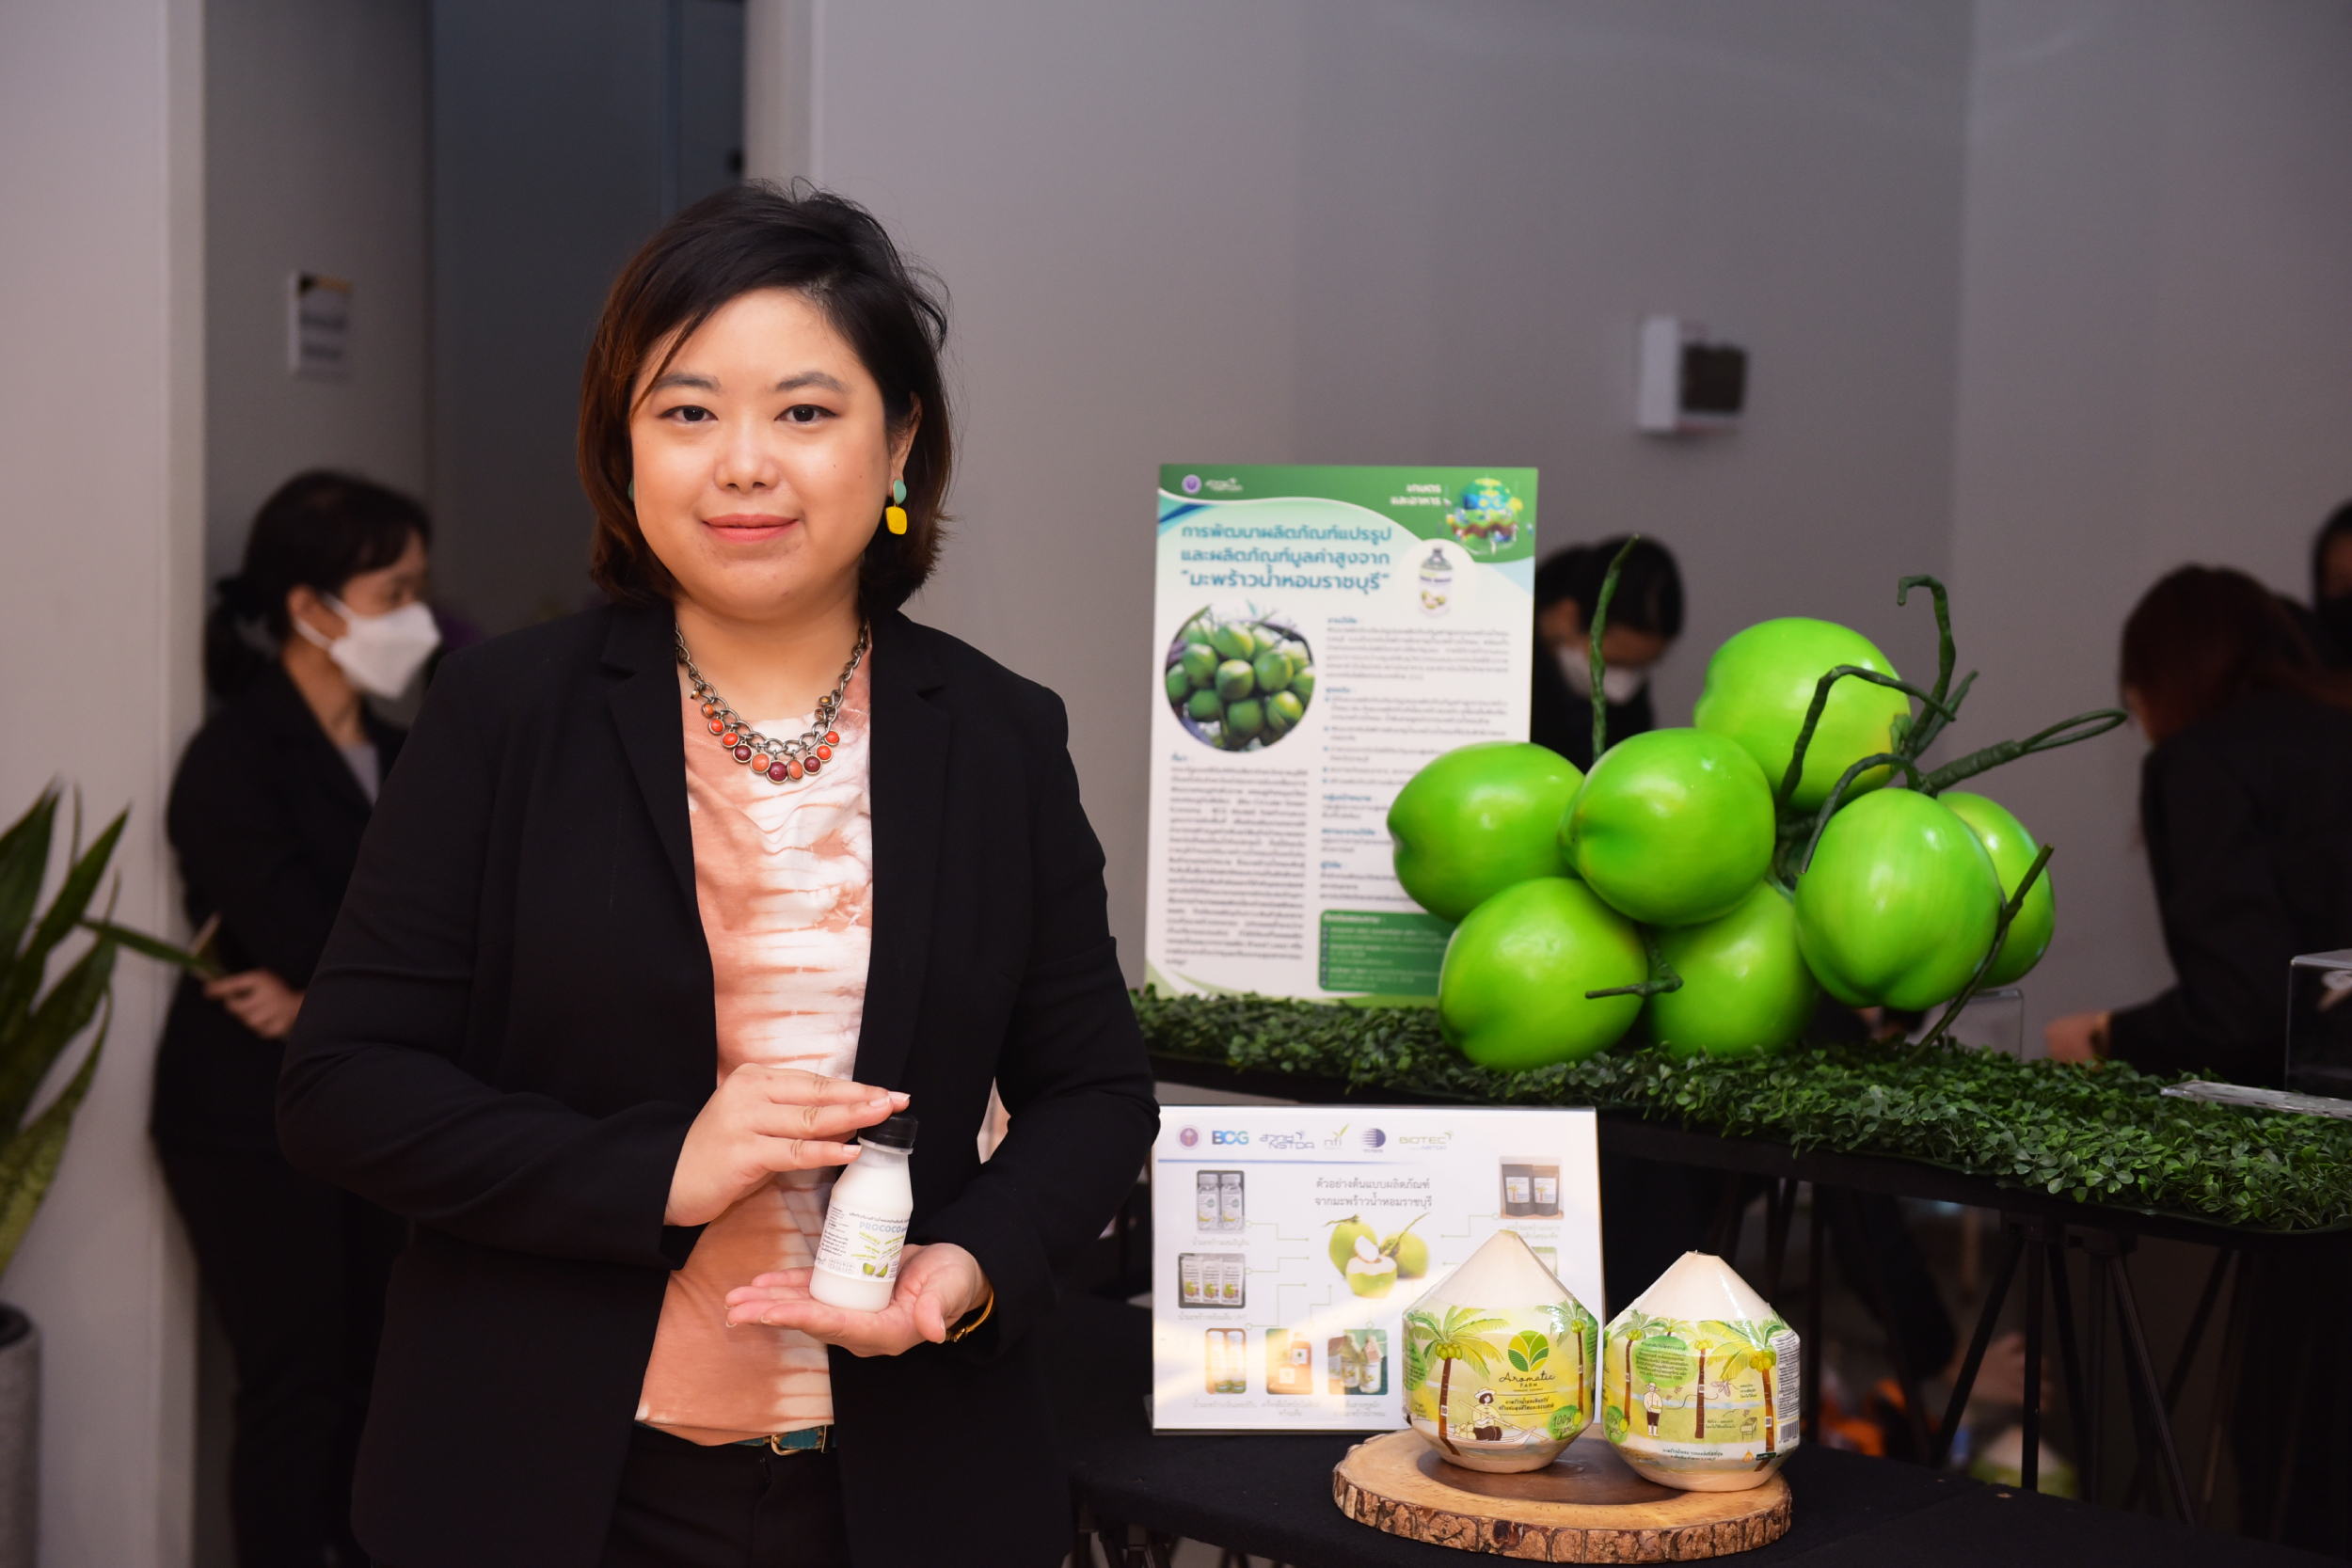 ลุยสวน “มะพร้าวน้ำหอมราชบุรี” ใช้เทคโนโลยีพัฒนาผลิตภัณฑ์แปรรูปและผลิตภัณฑ์มูลค่าสูง